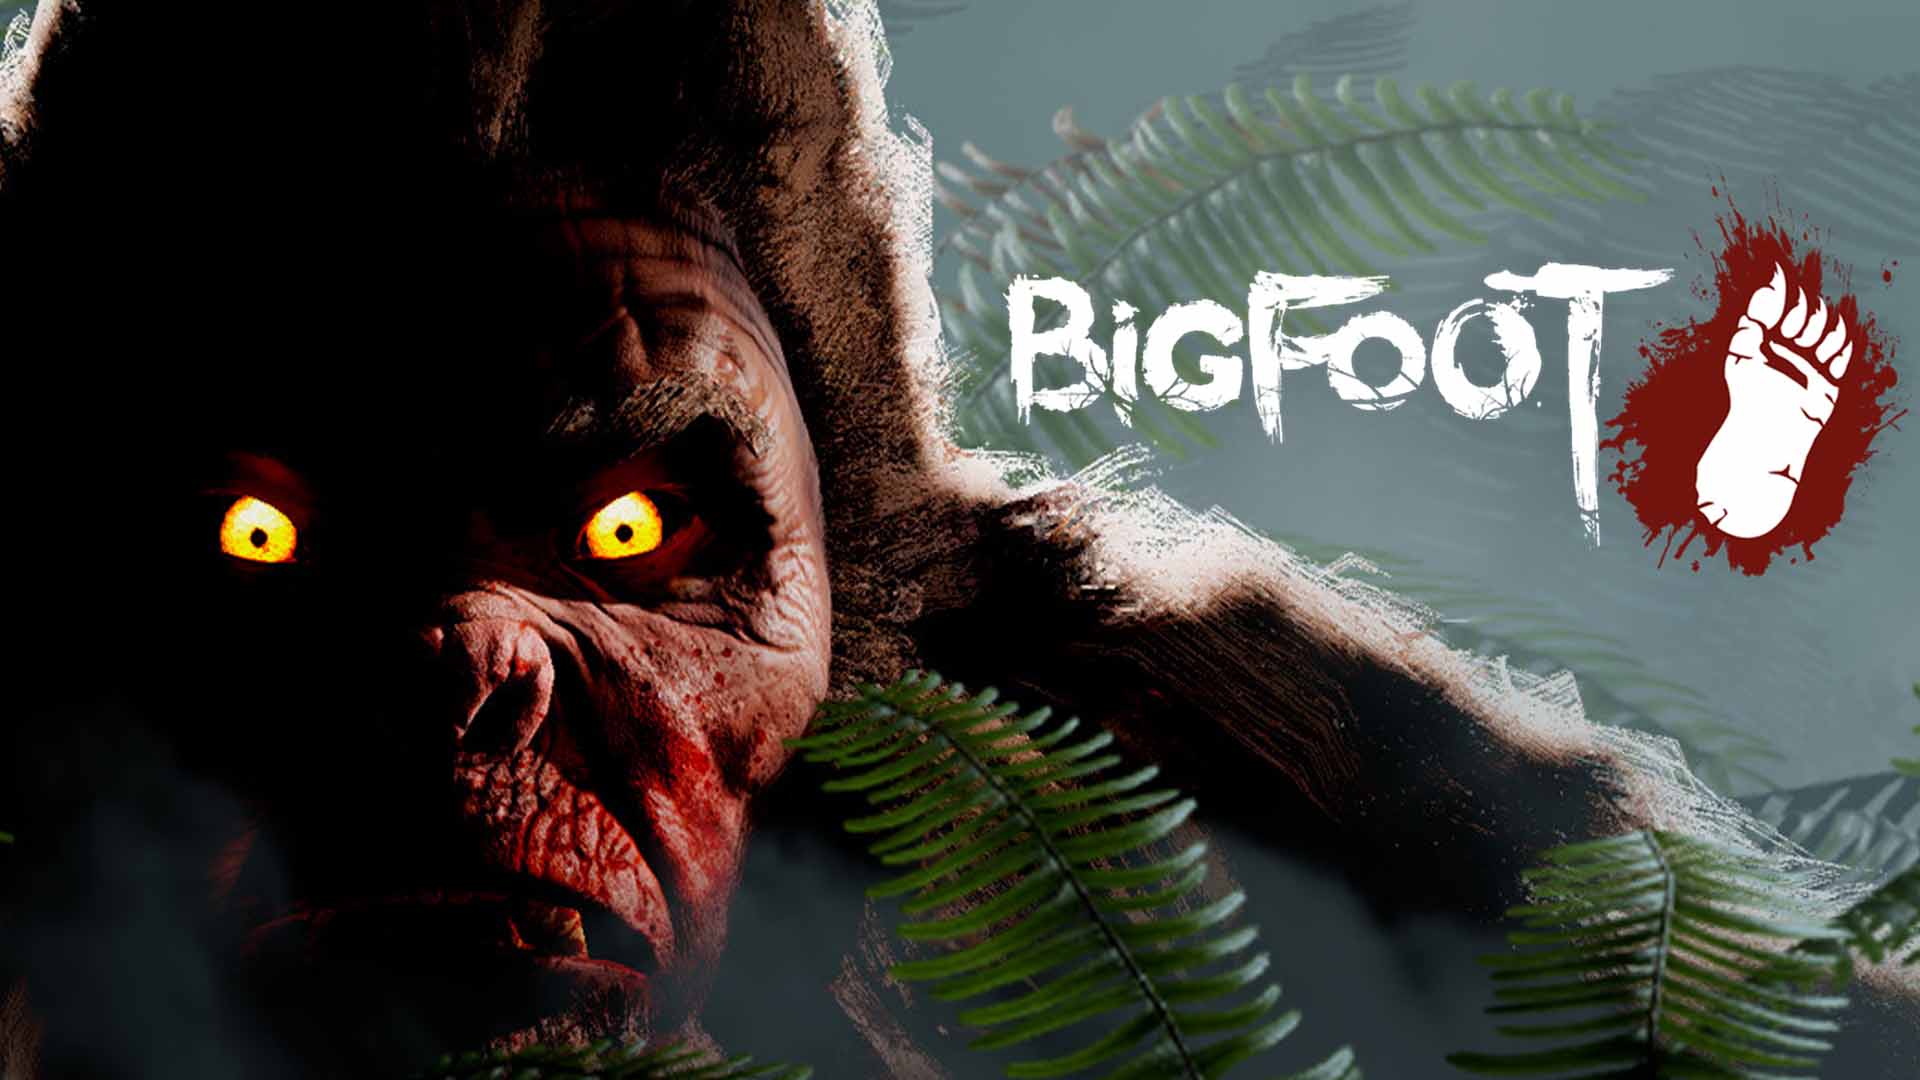 BIGFOOT PS4 Version Full Game Free Download